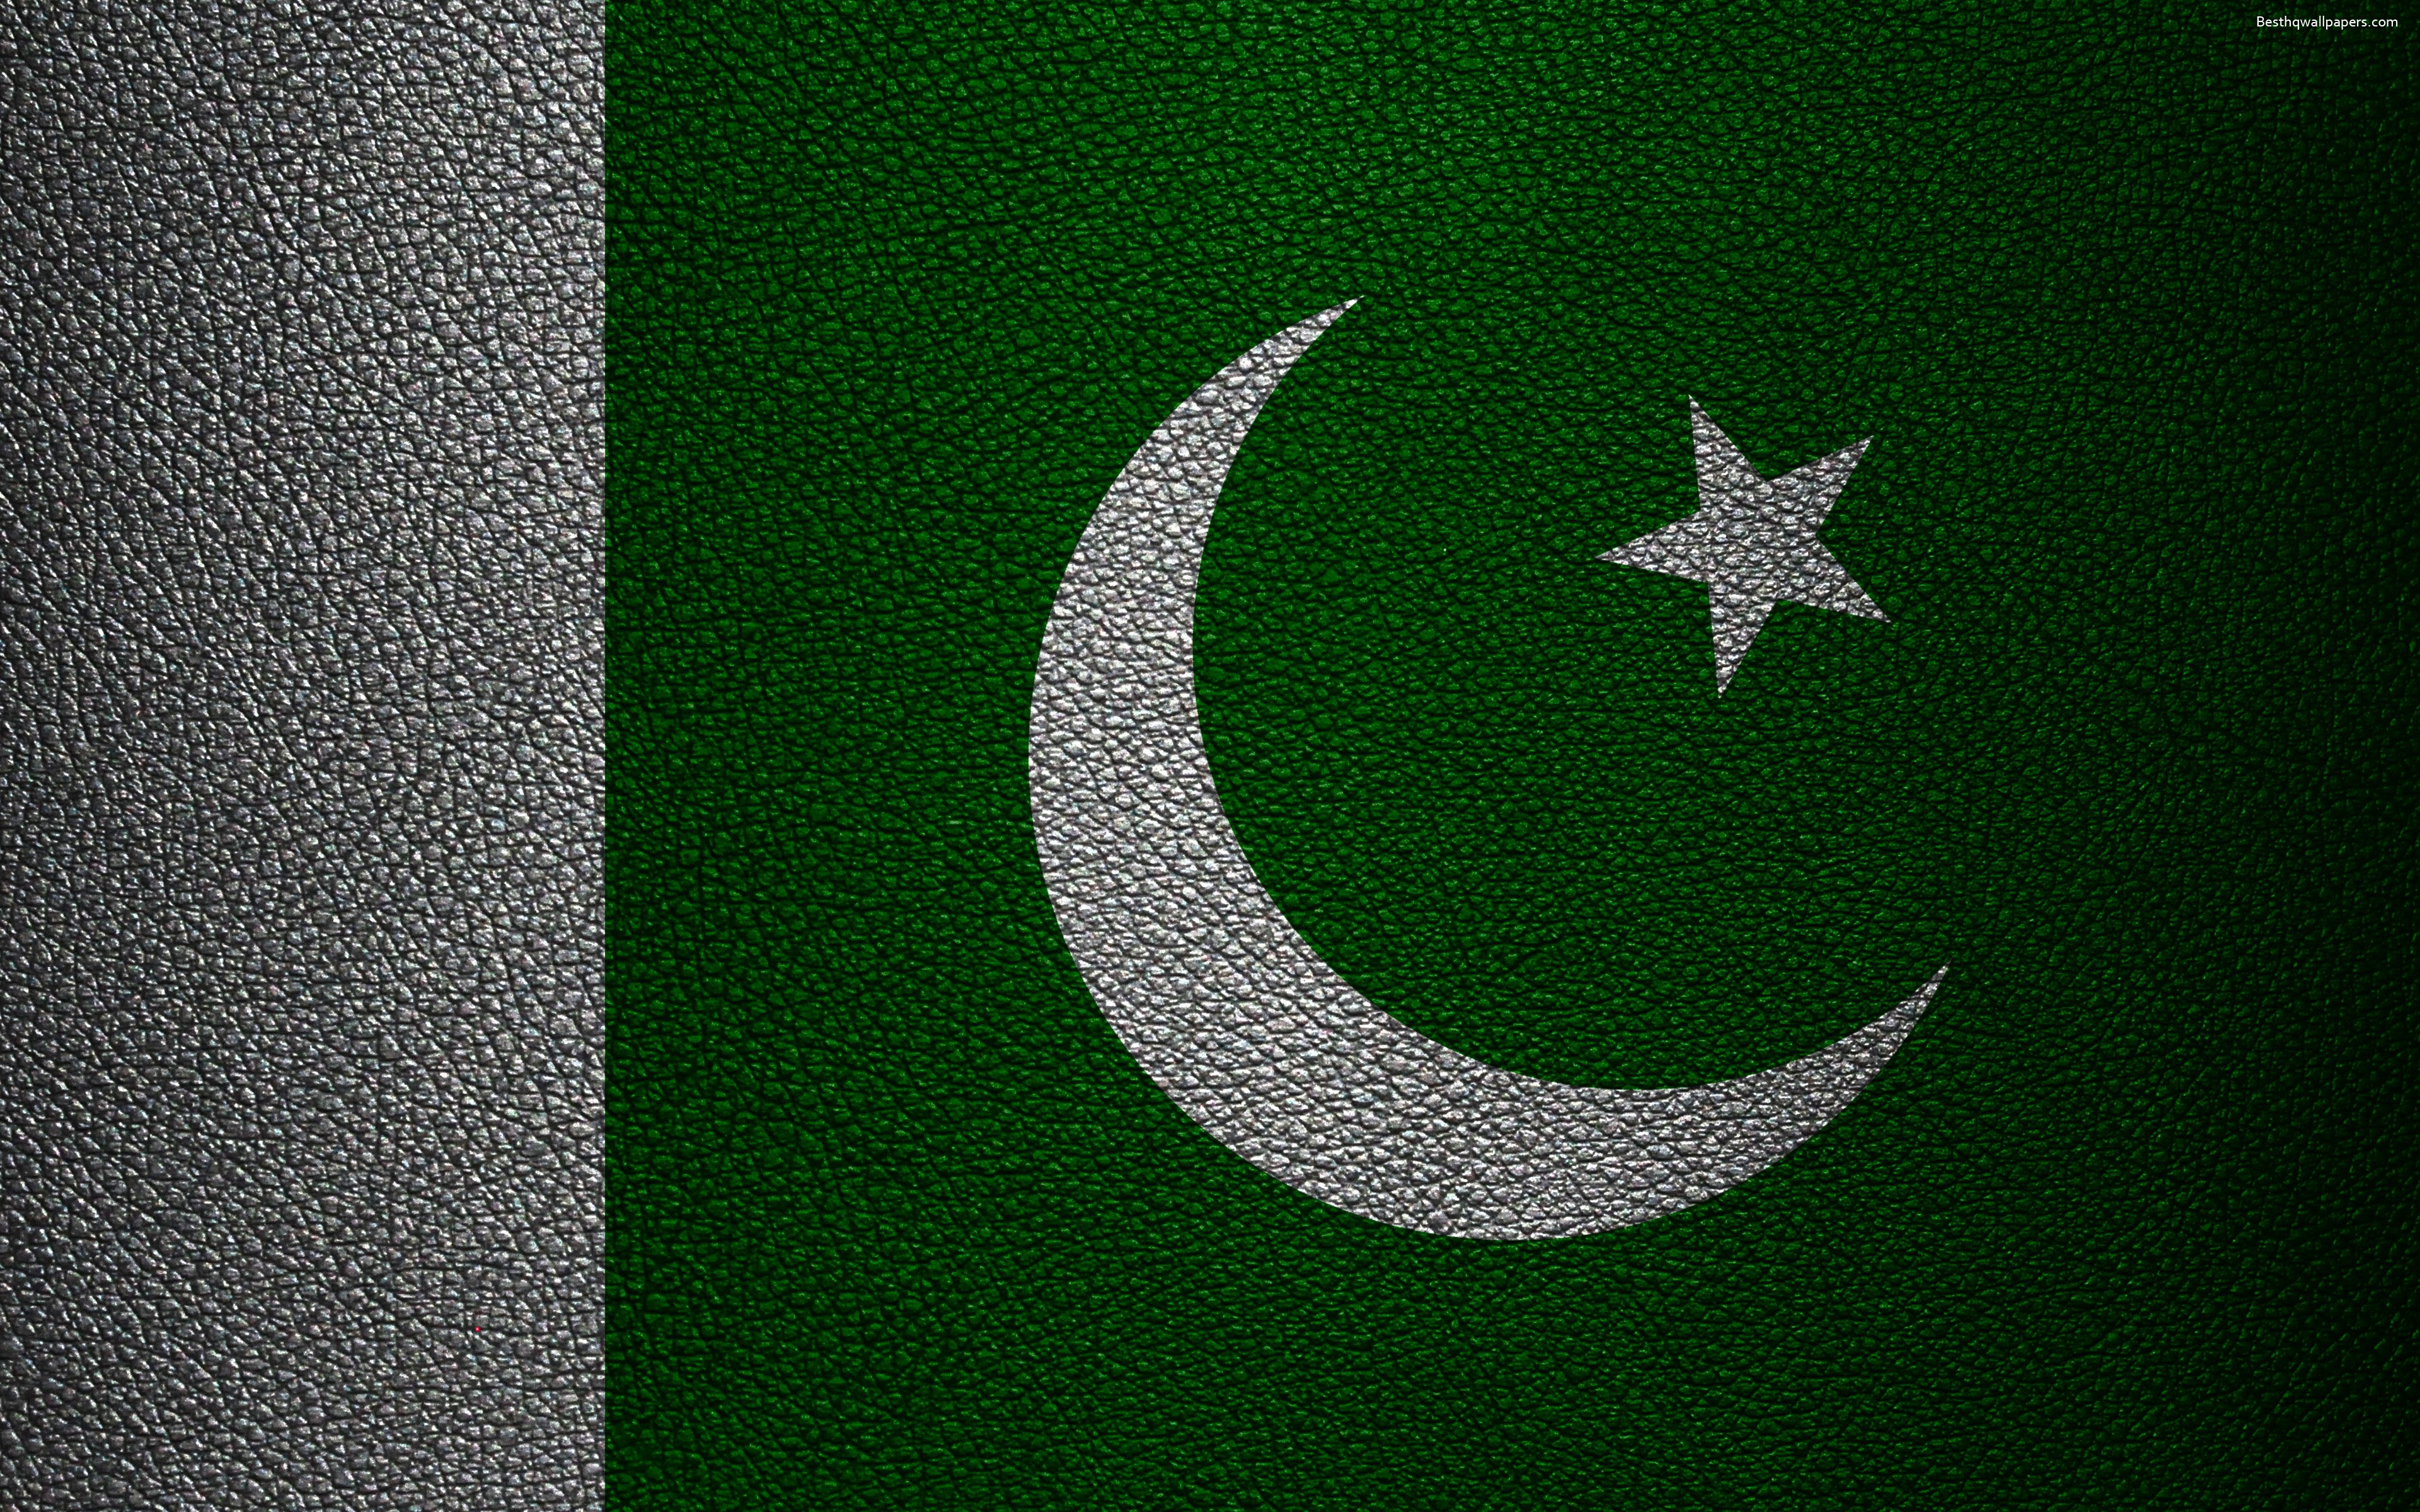 ダウンロード画像 フラグのパキスタン 4k 革の質感 パキスタンのフラグ アジア 世界の国旗 パキスタン 画面の解像度 3840x2400 壁紙デスクトップ上